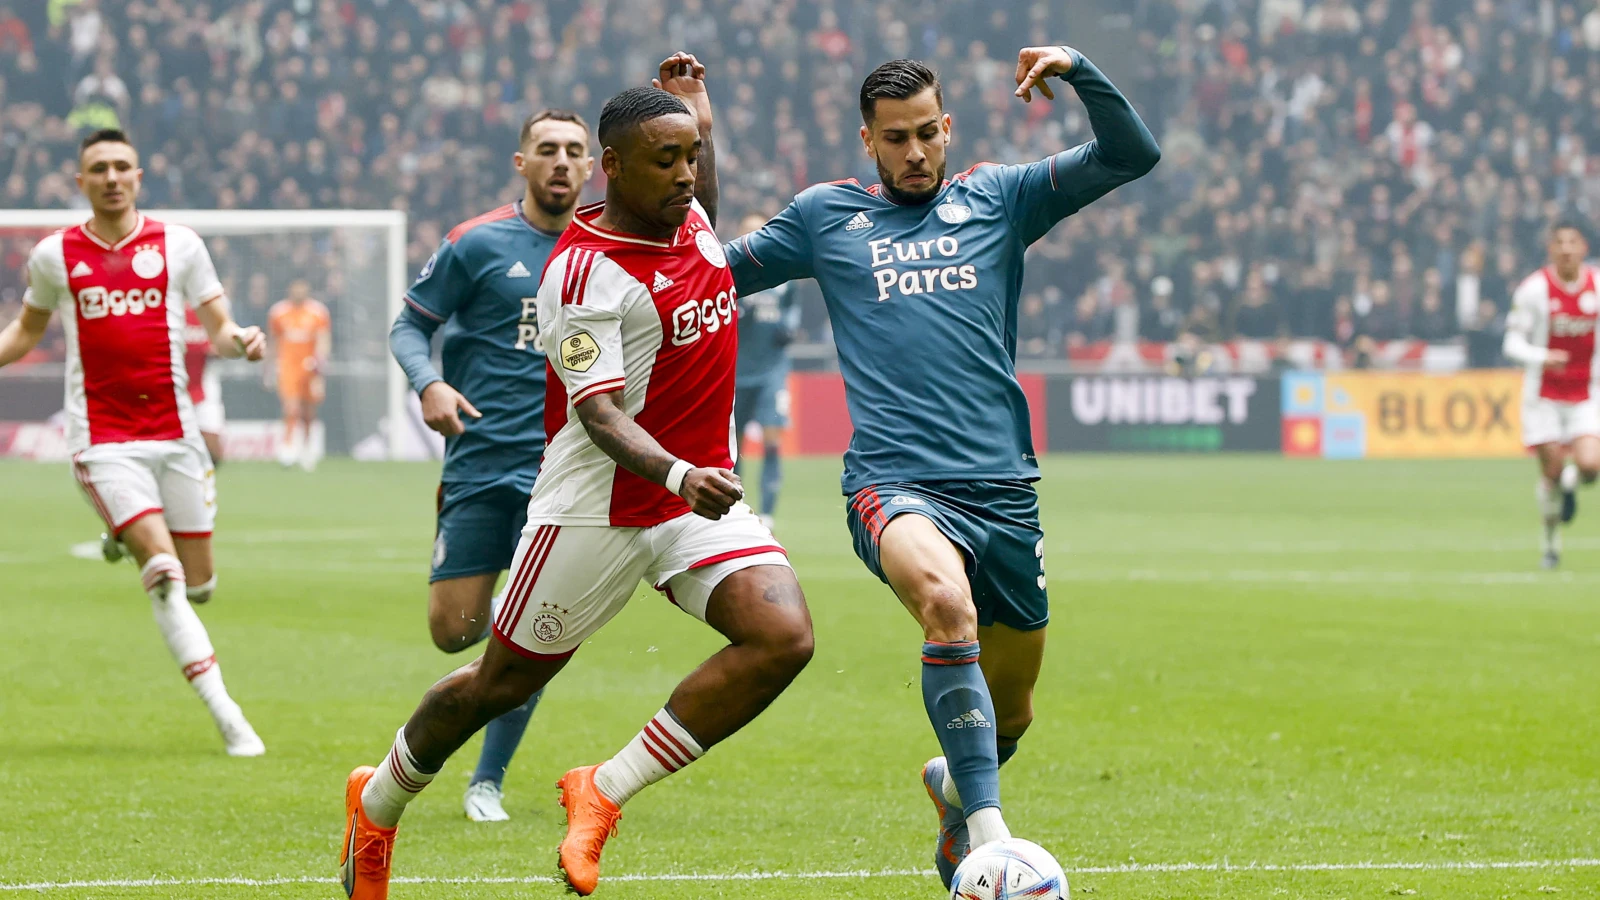 LIVE | Ajax - Feyenoord 2-3 | Einde wedstrijd